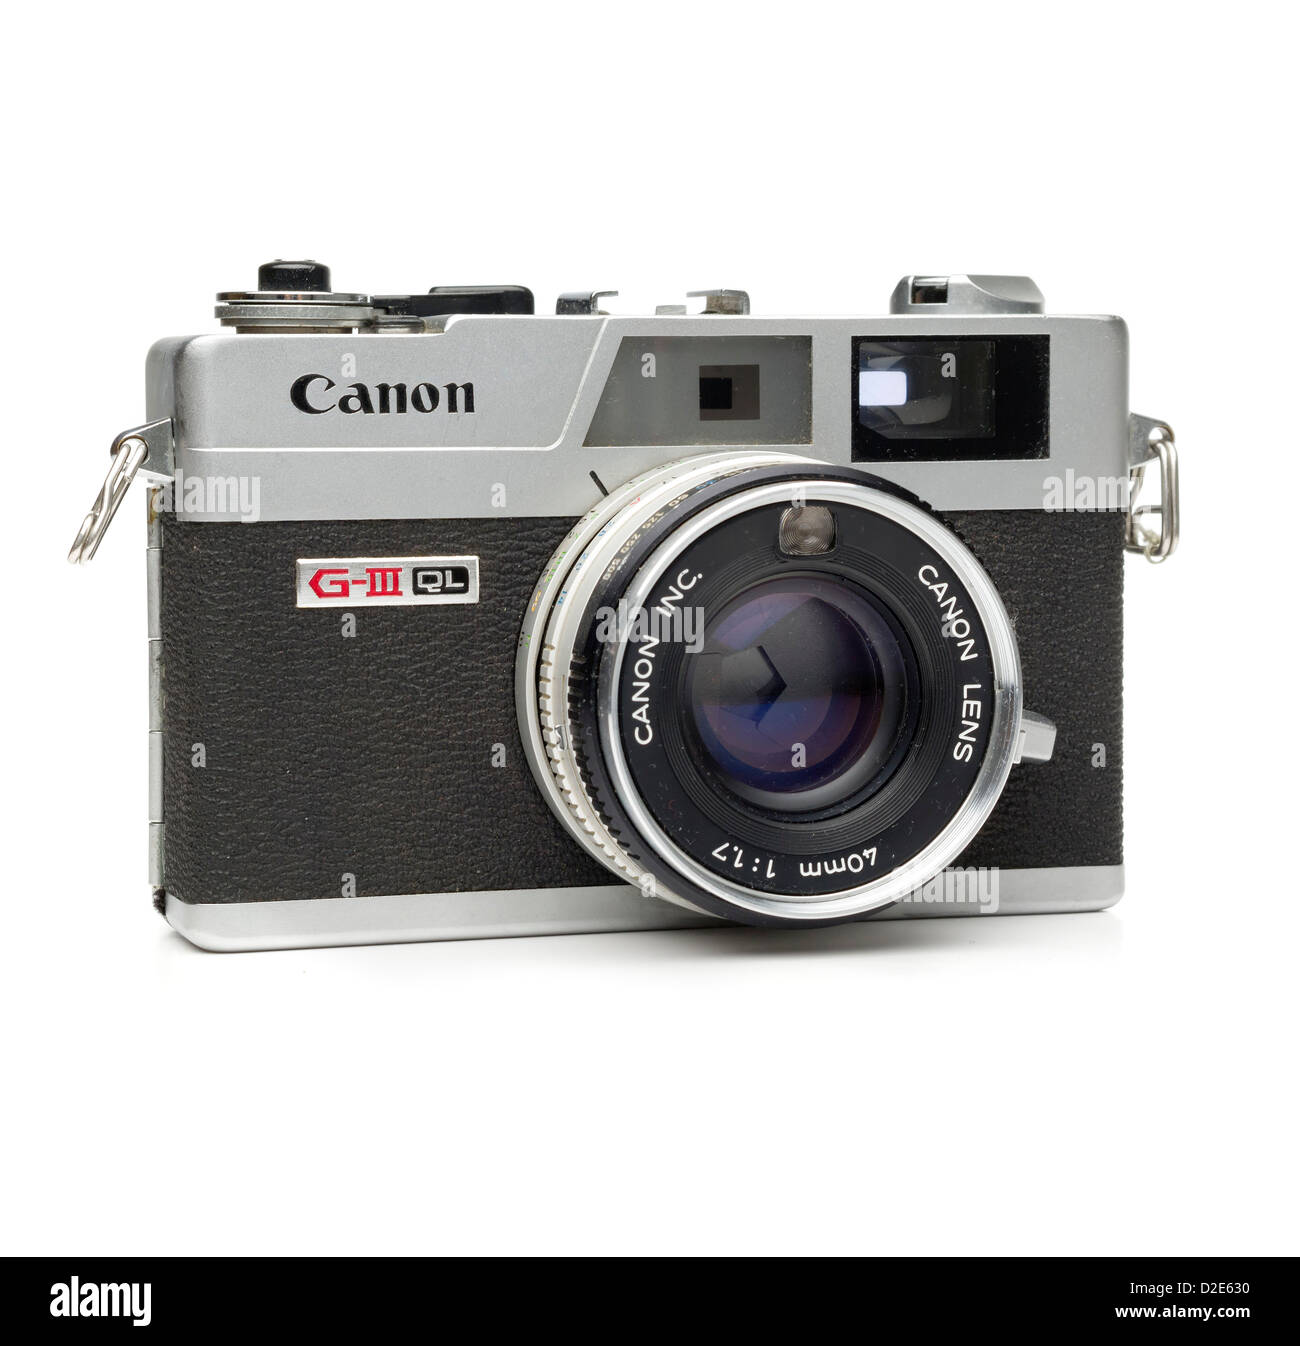 Canon canonet ql17 Banque de photographies et d'images à haute résolution -  Alamy